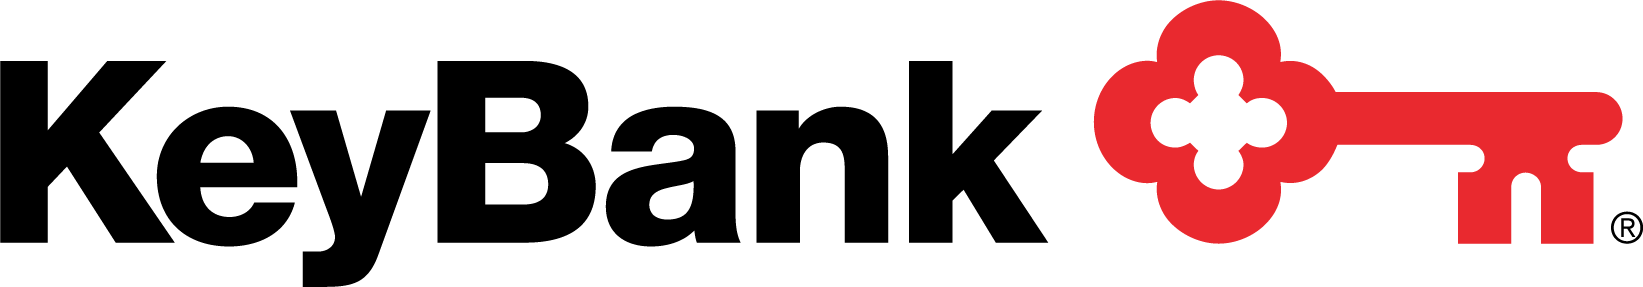 KeyBank-logo-CMYK.png